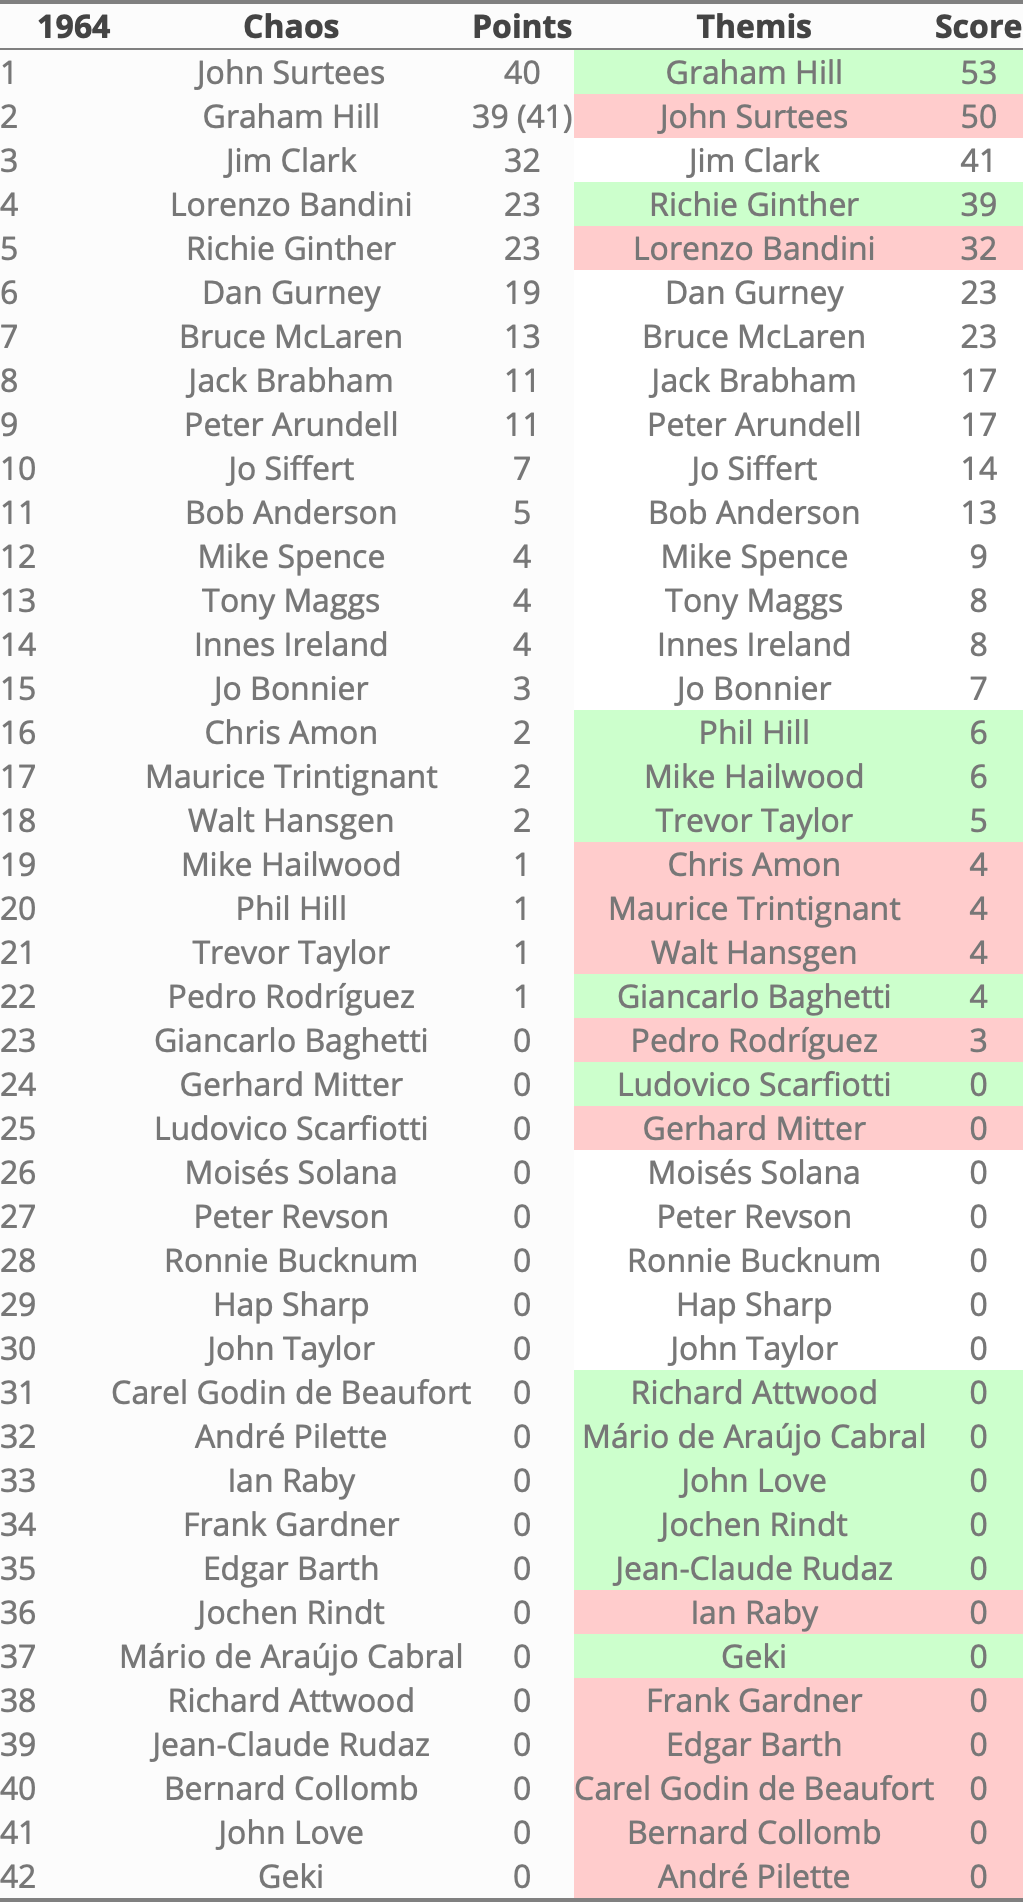 Rankings 1964 in Themis